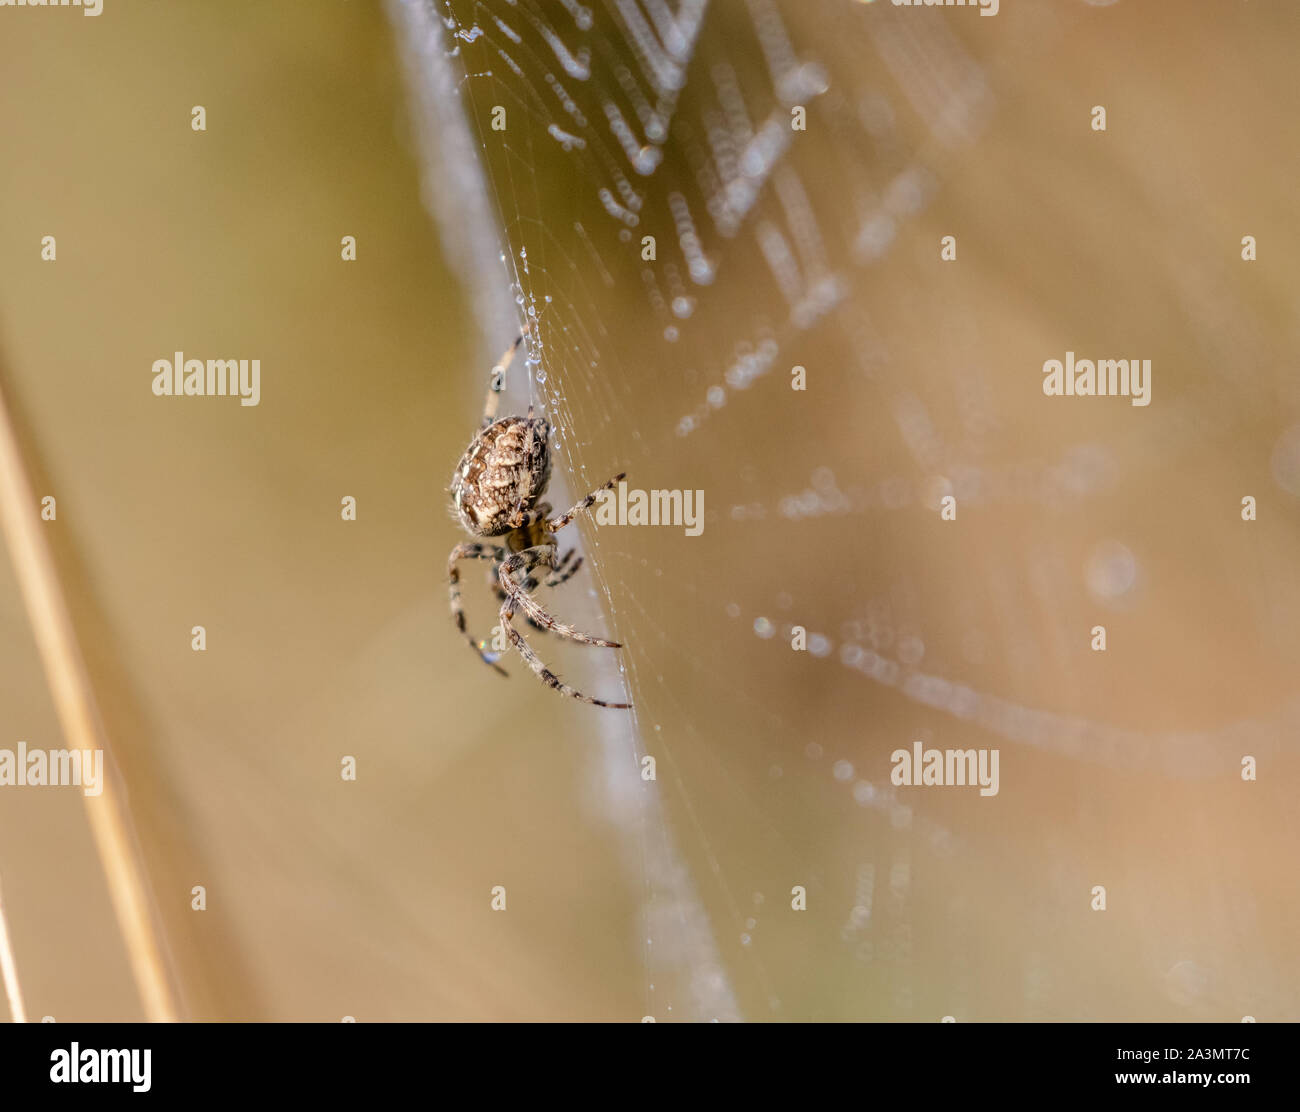 A  European Garden Spider spinning a web. Stock Photo